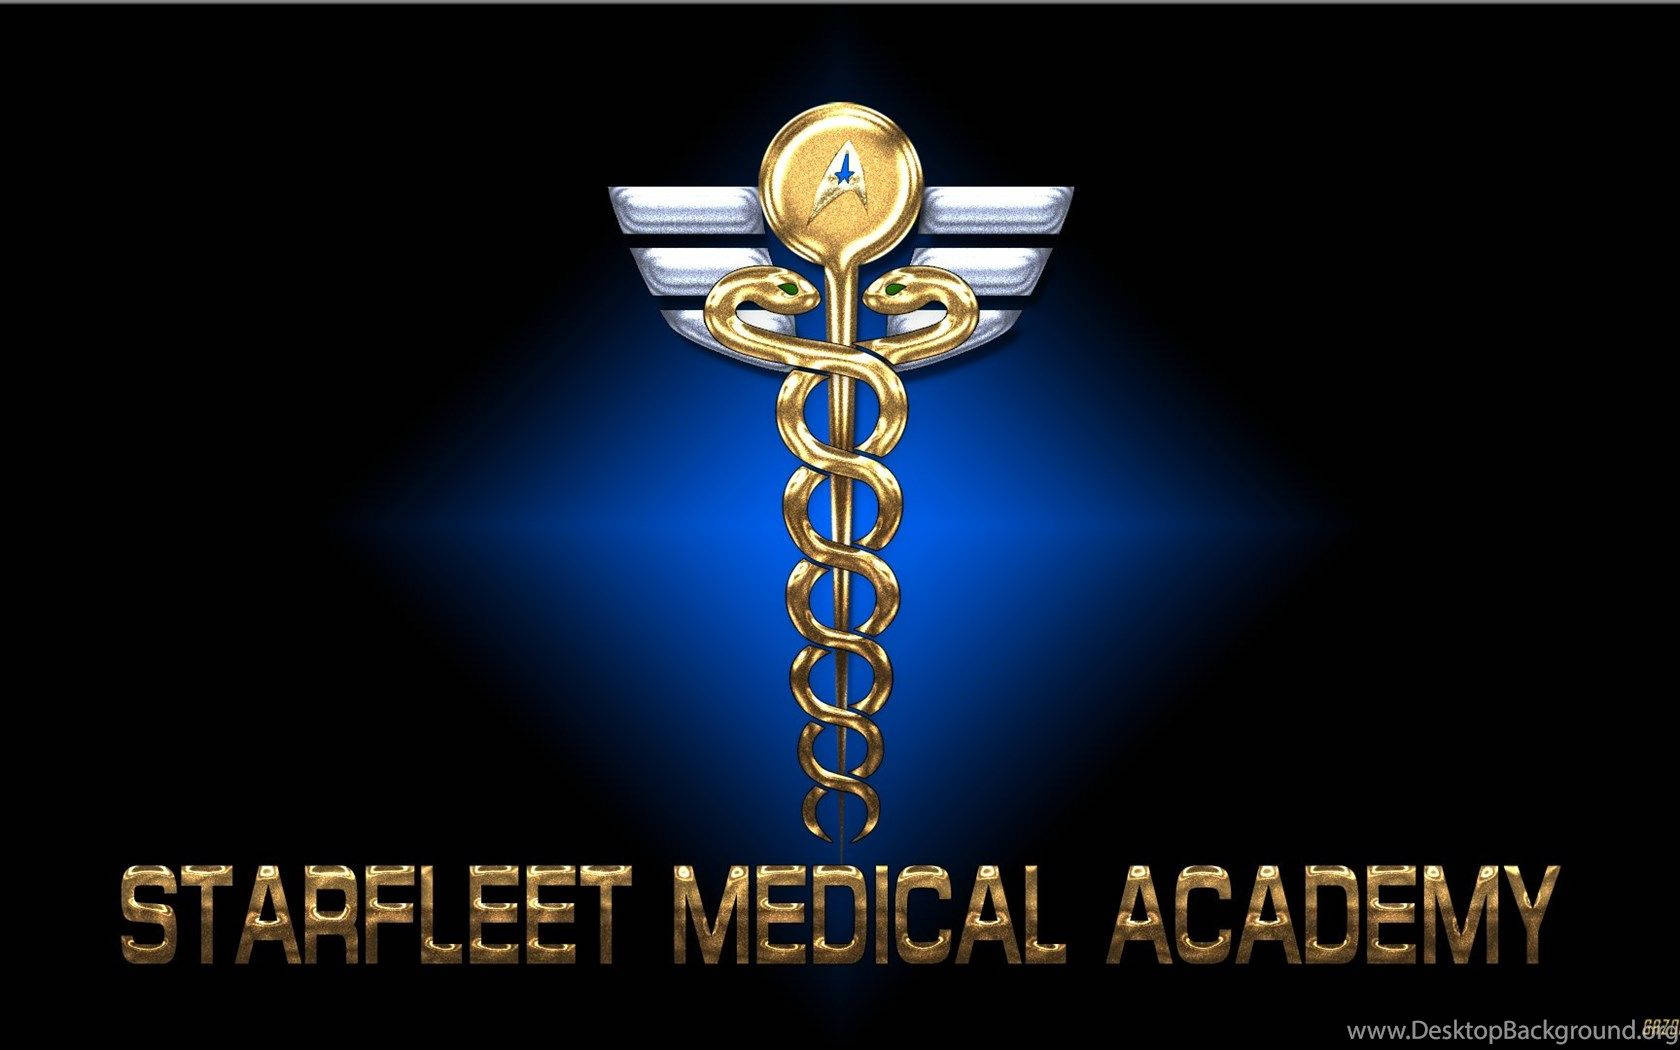 Starfleetmedical Academy-affisch Wallpaper